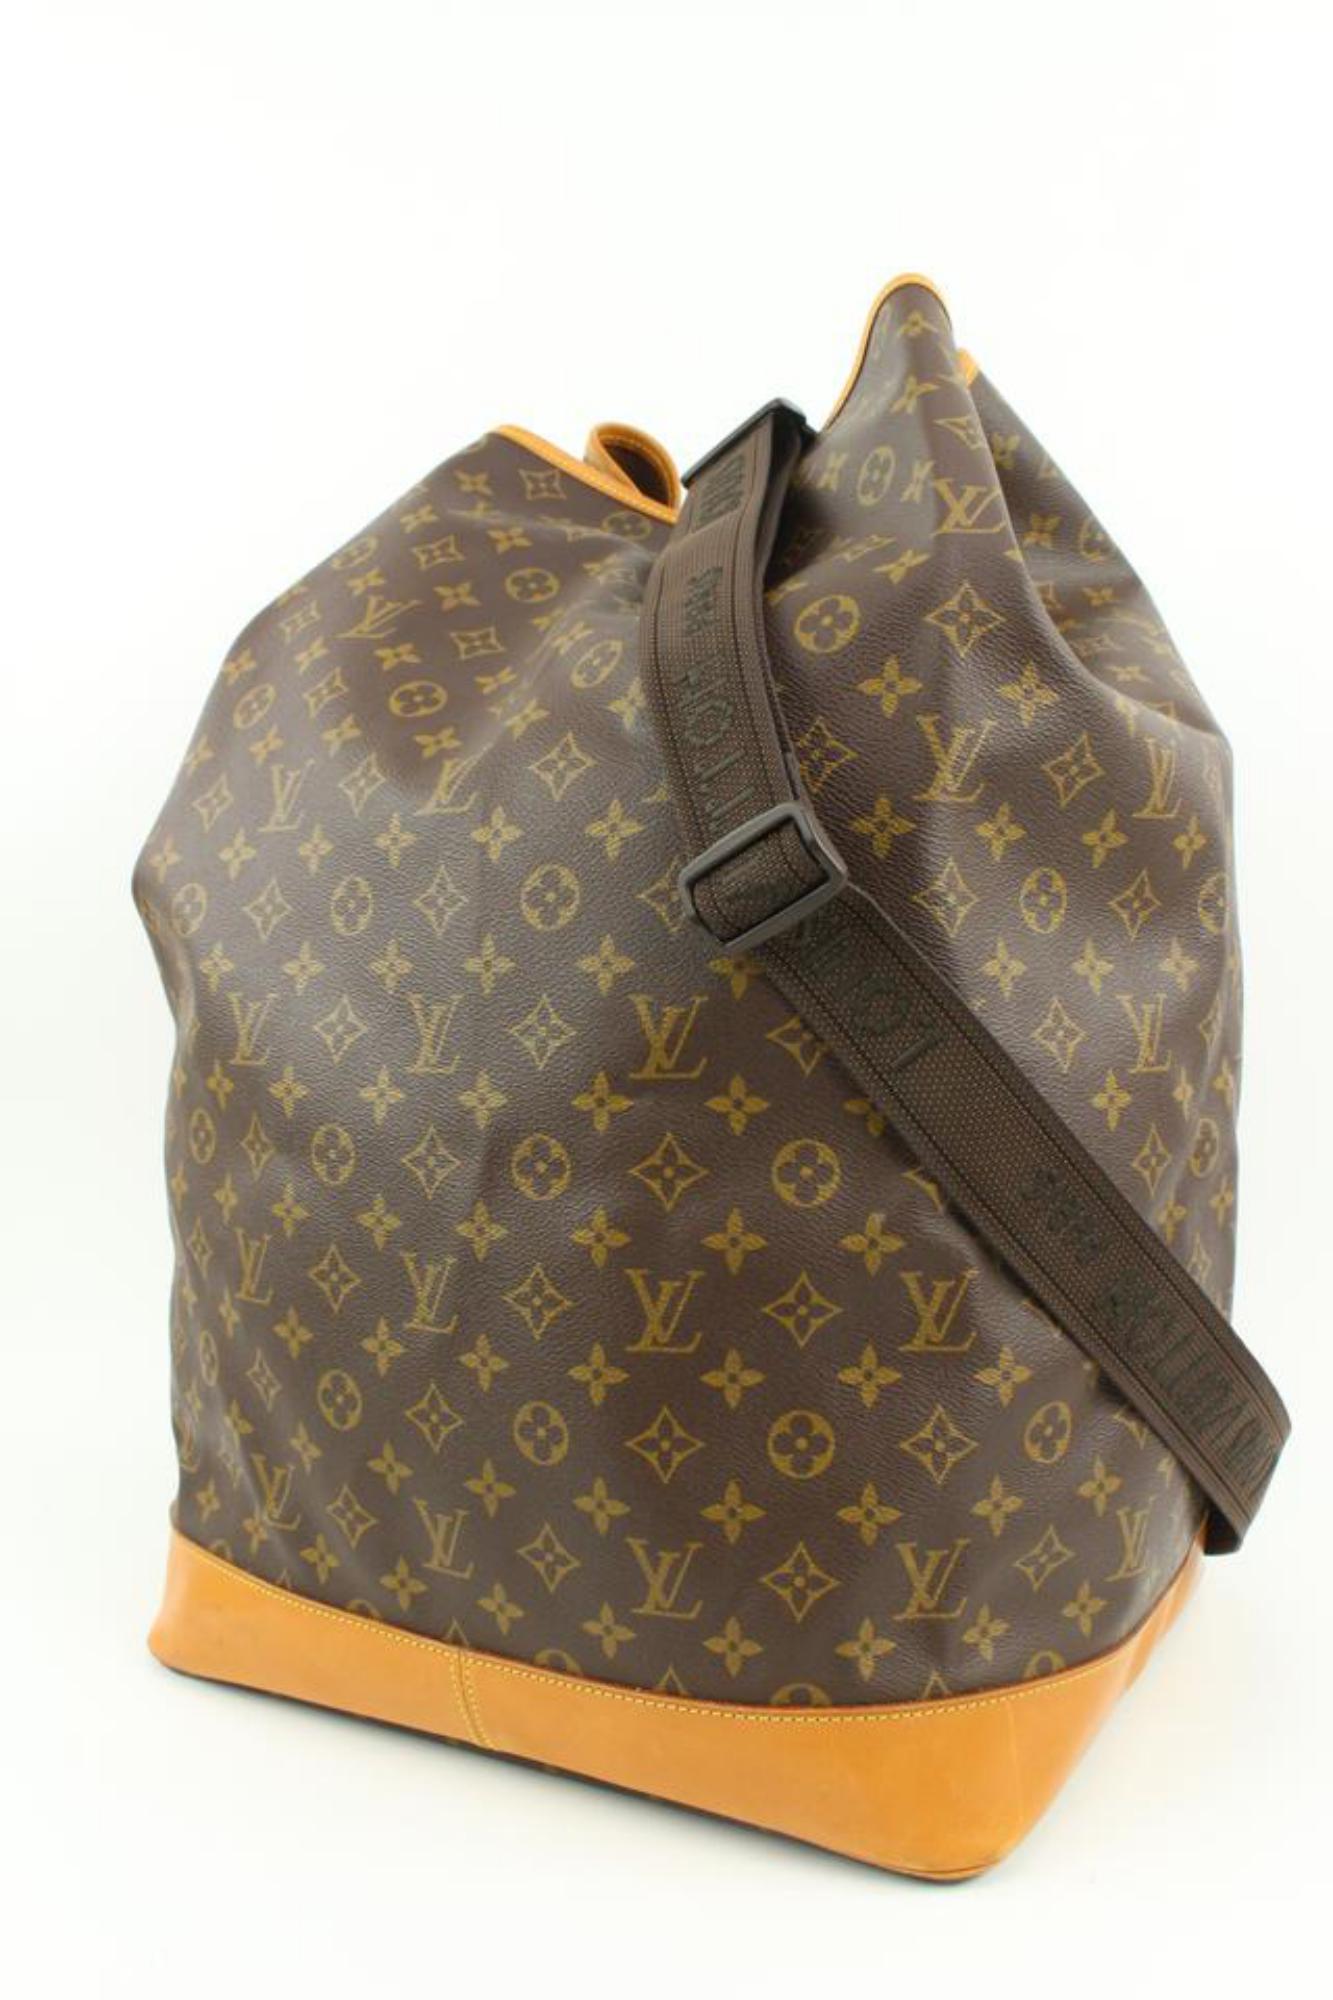 Louis Vuitton Large Monogram Sac Marine Sling Bag 1LV67s 6